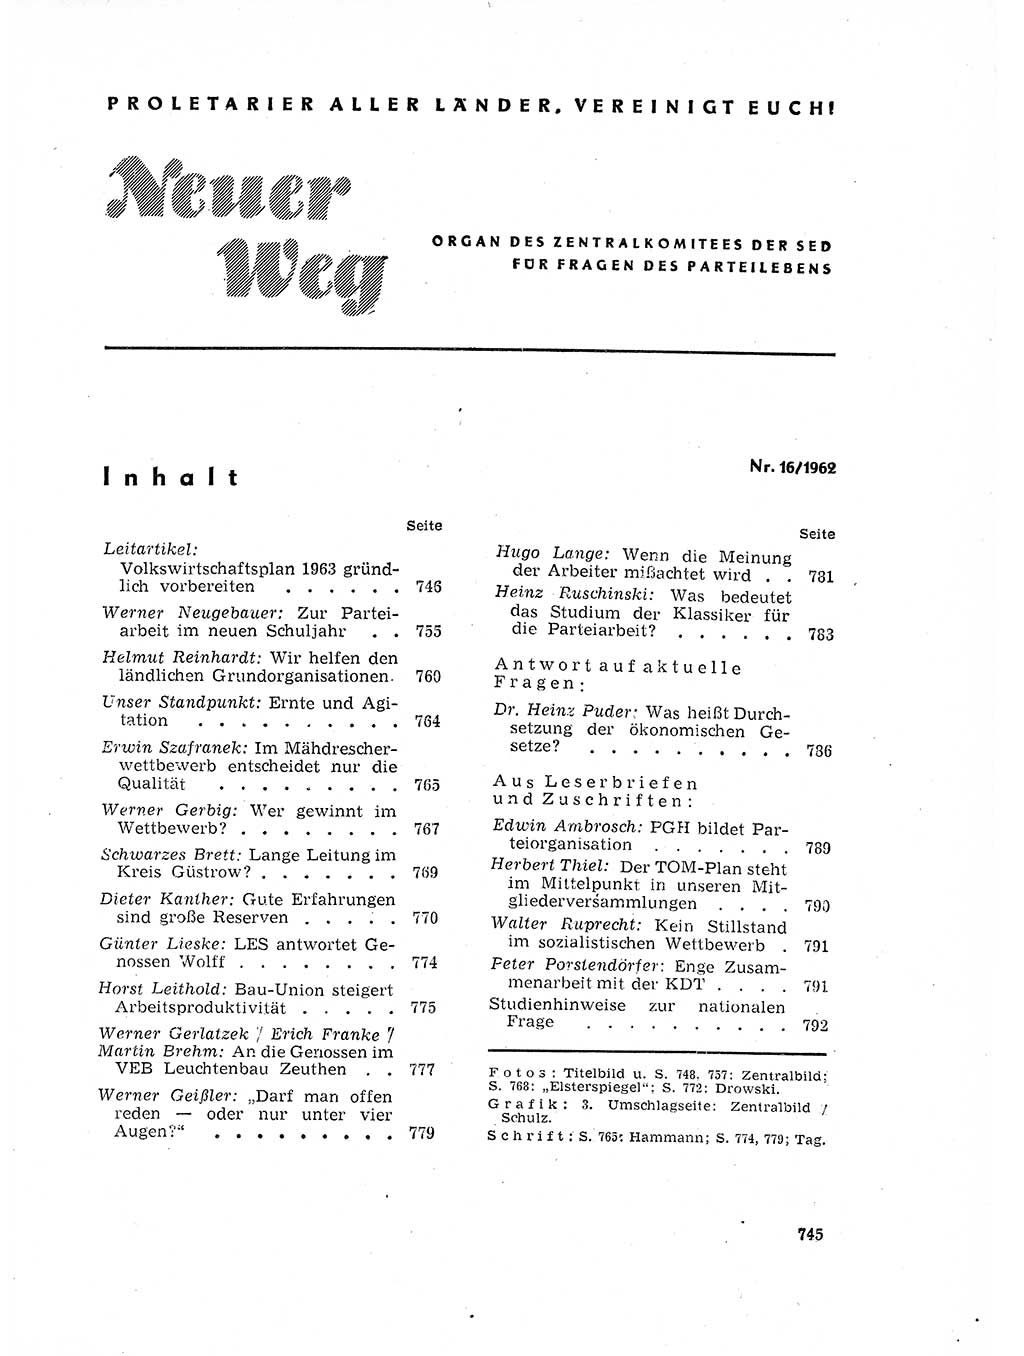 Neuer Weg (NW), Organ des Zentralkomitees (ZK) der SED (Sozialistische Einheitspartei Deutschlands) für Fragen des Parteilebens, 17. Jahrgang [Deutsche Demokratische Republik (DDR)] 1962, Seite 745 (NW ZK SED DDR 1962, S. 745)